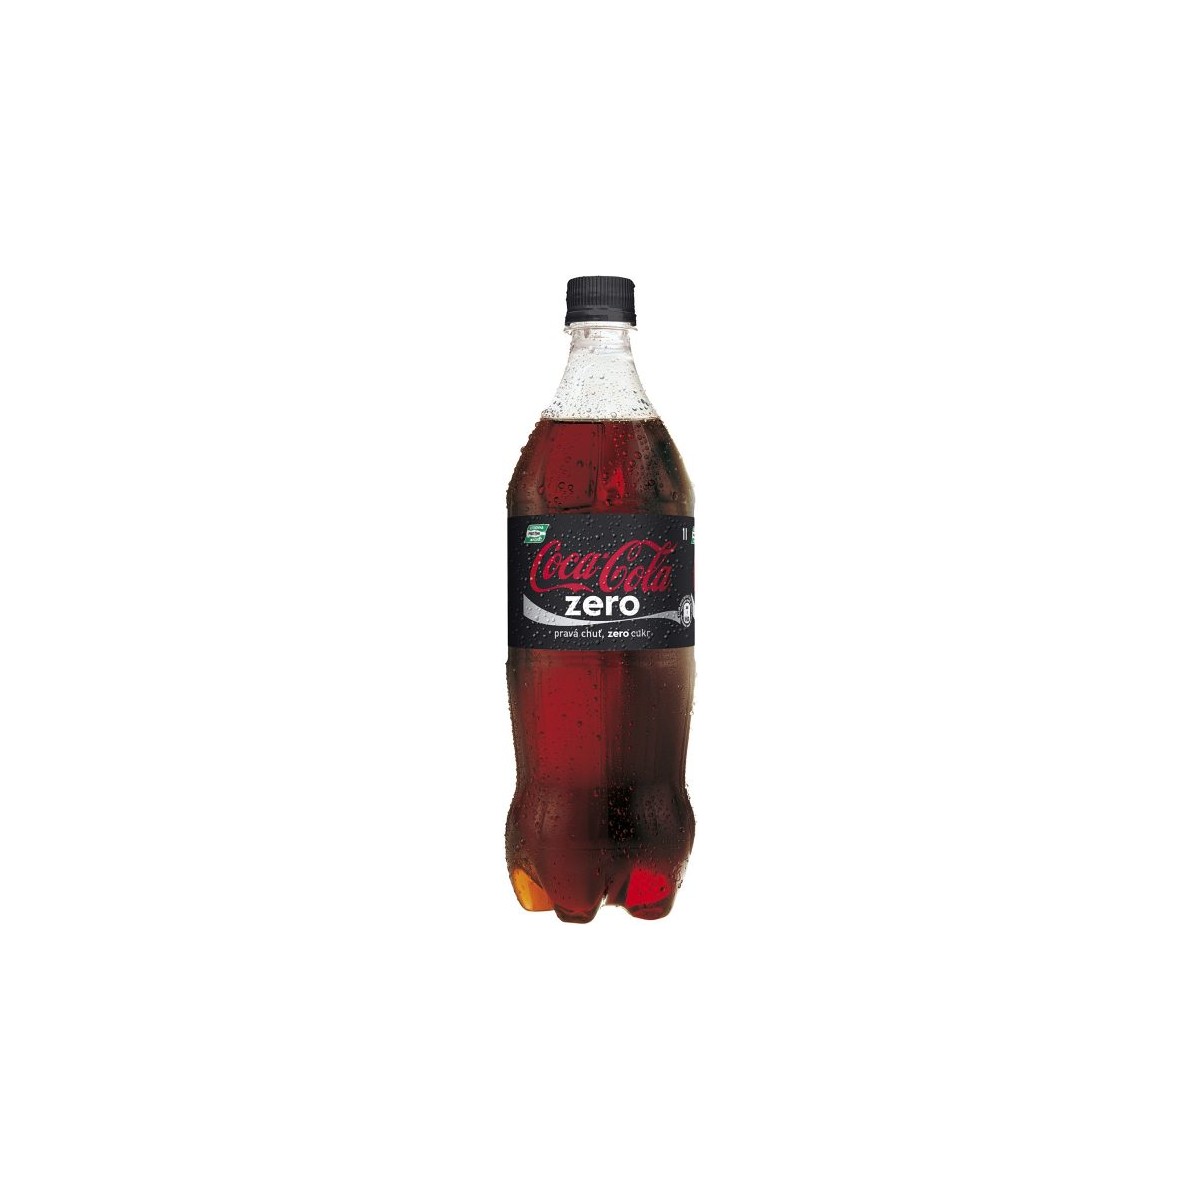 Coca cola ZERO 1l - PET